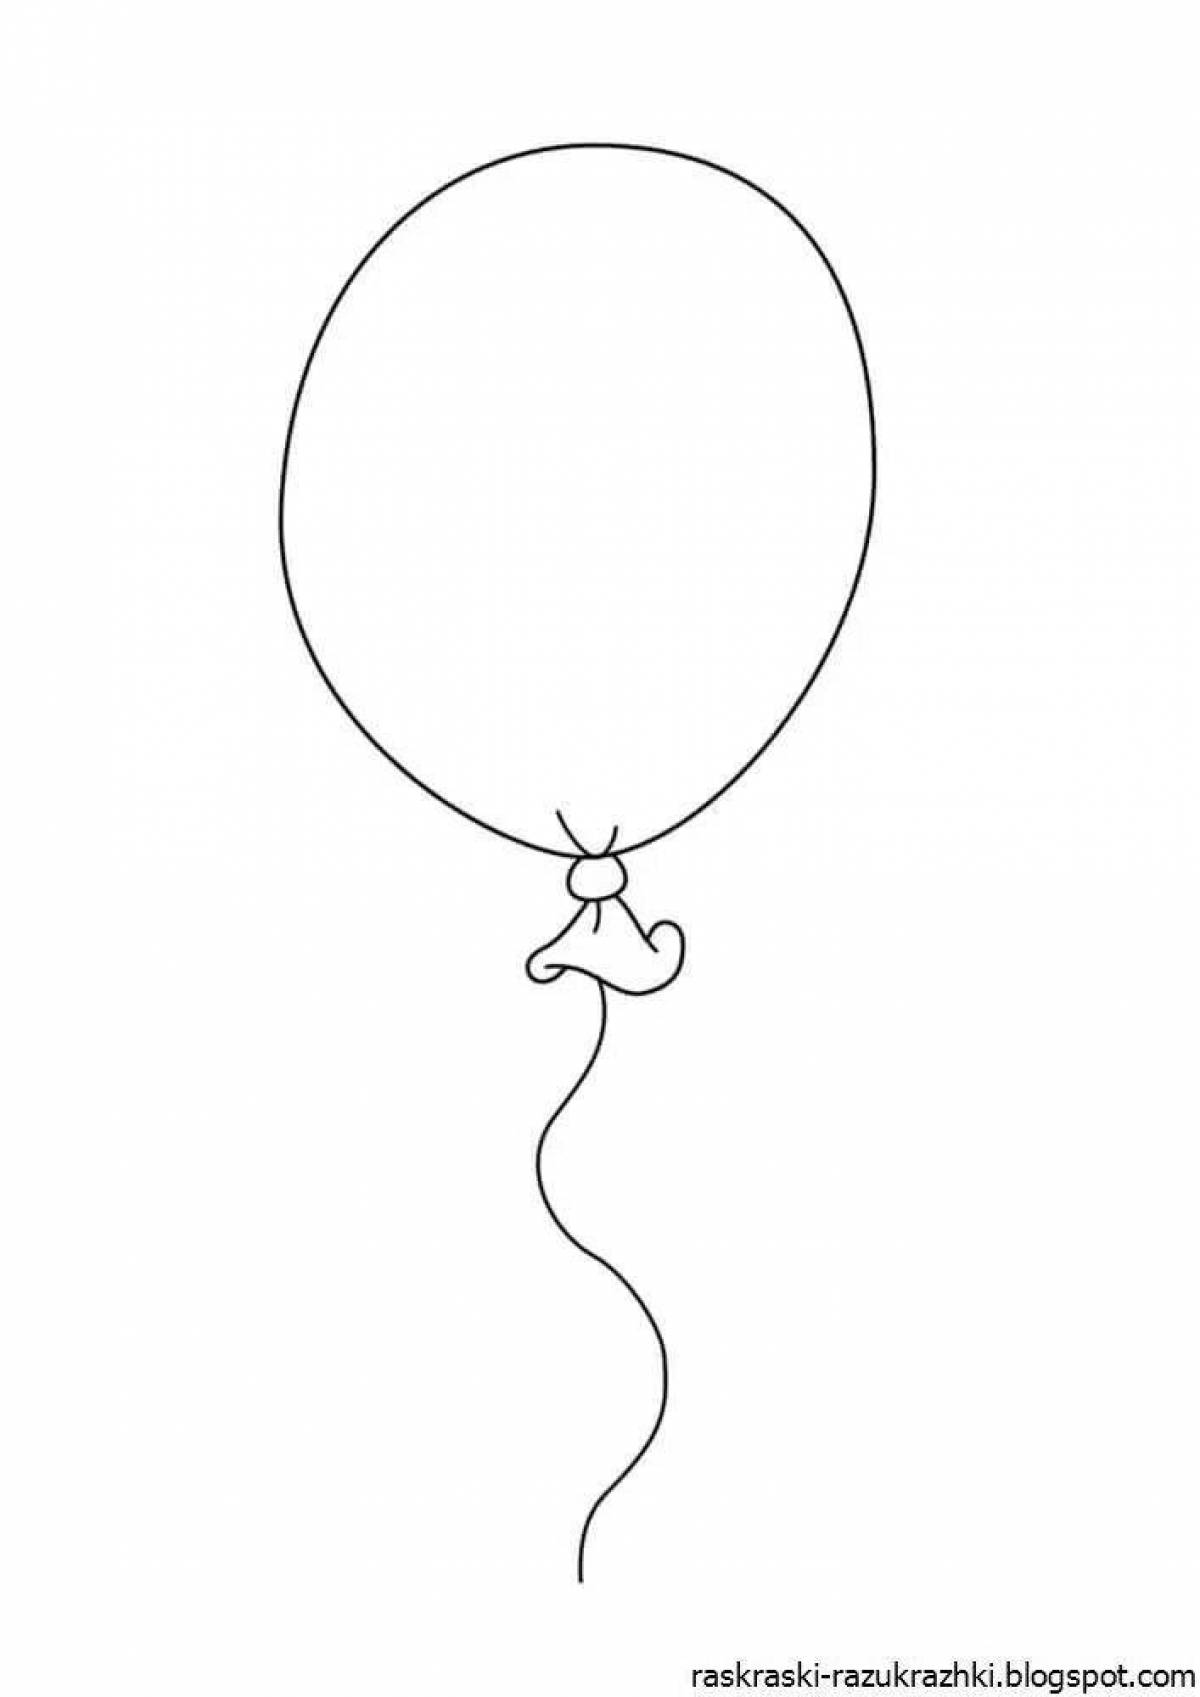 Baby balloon #11